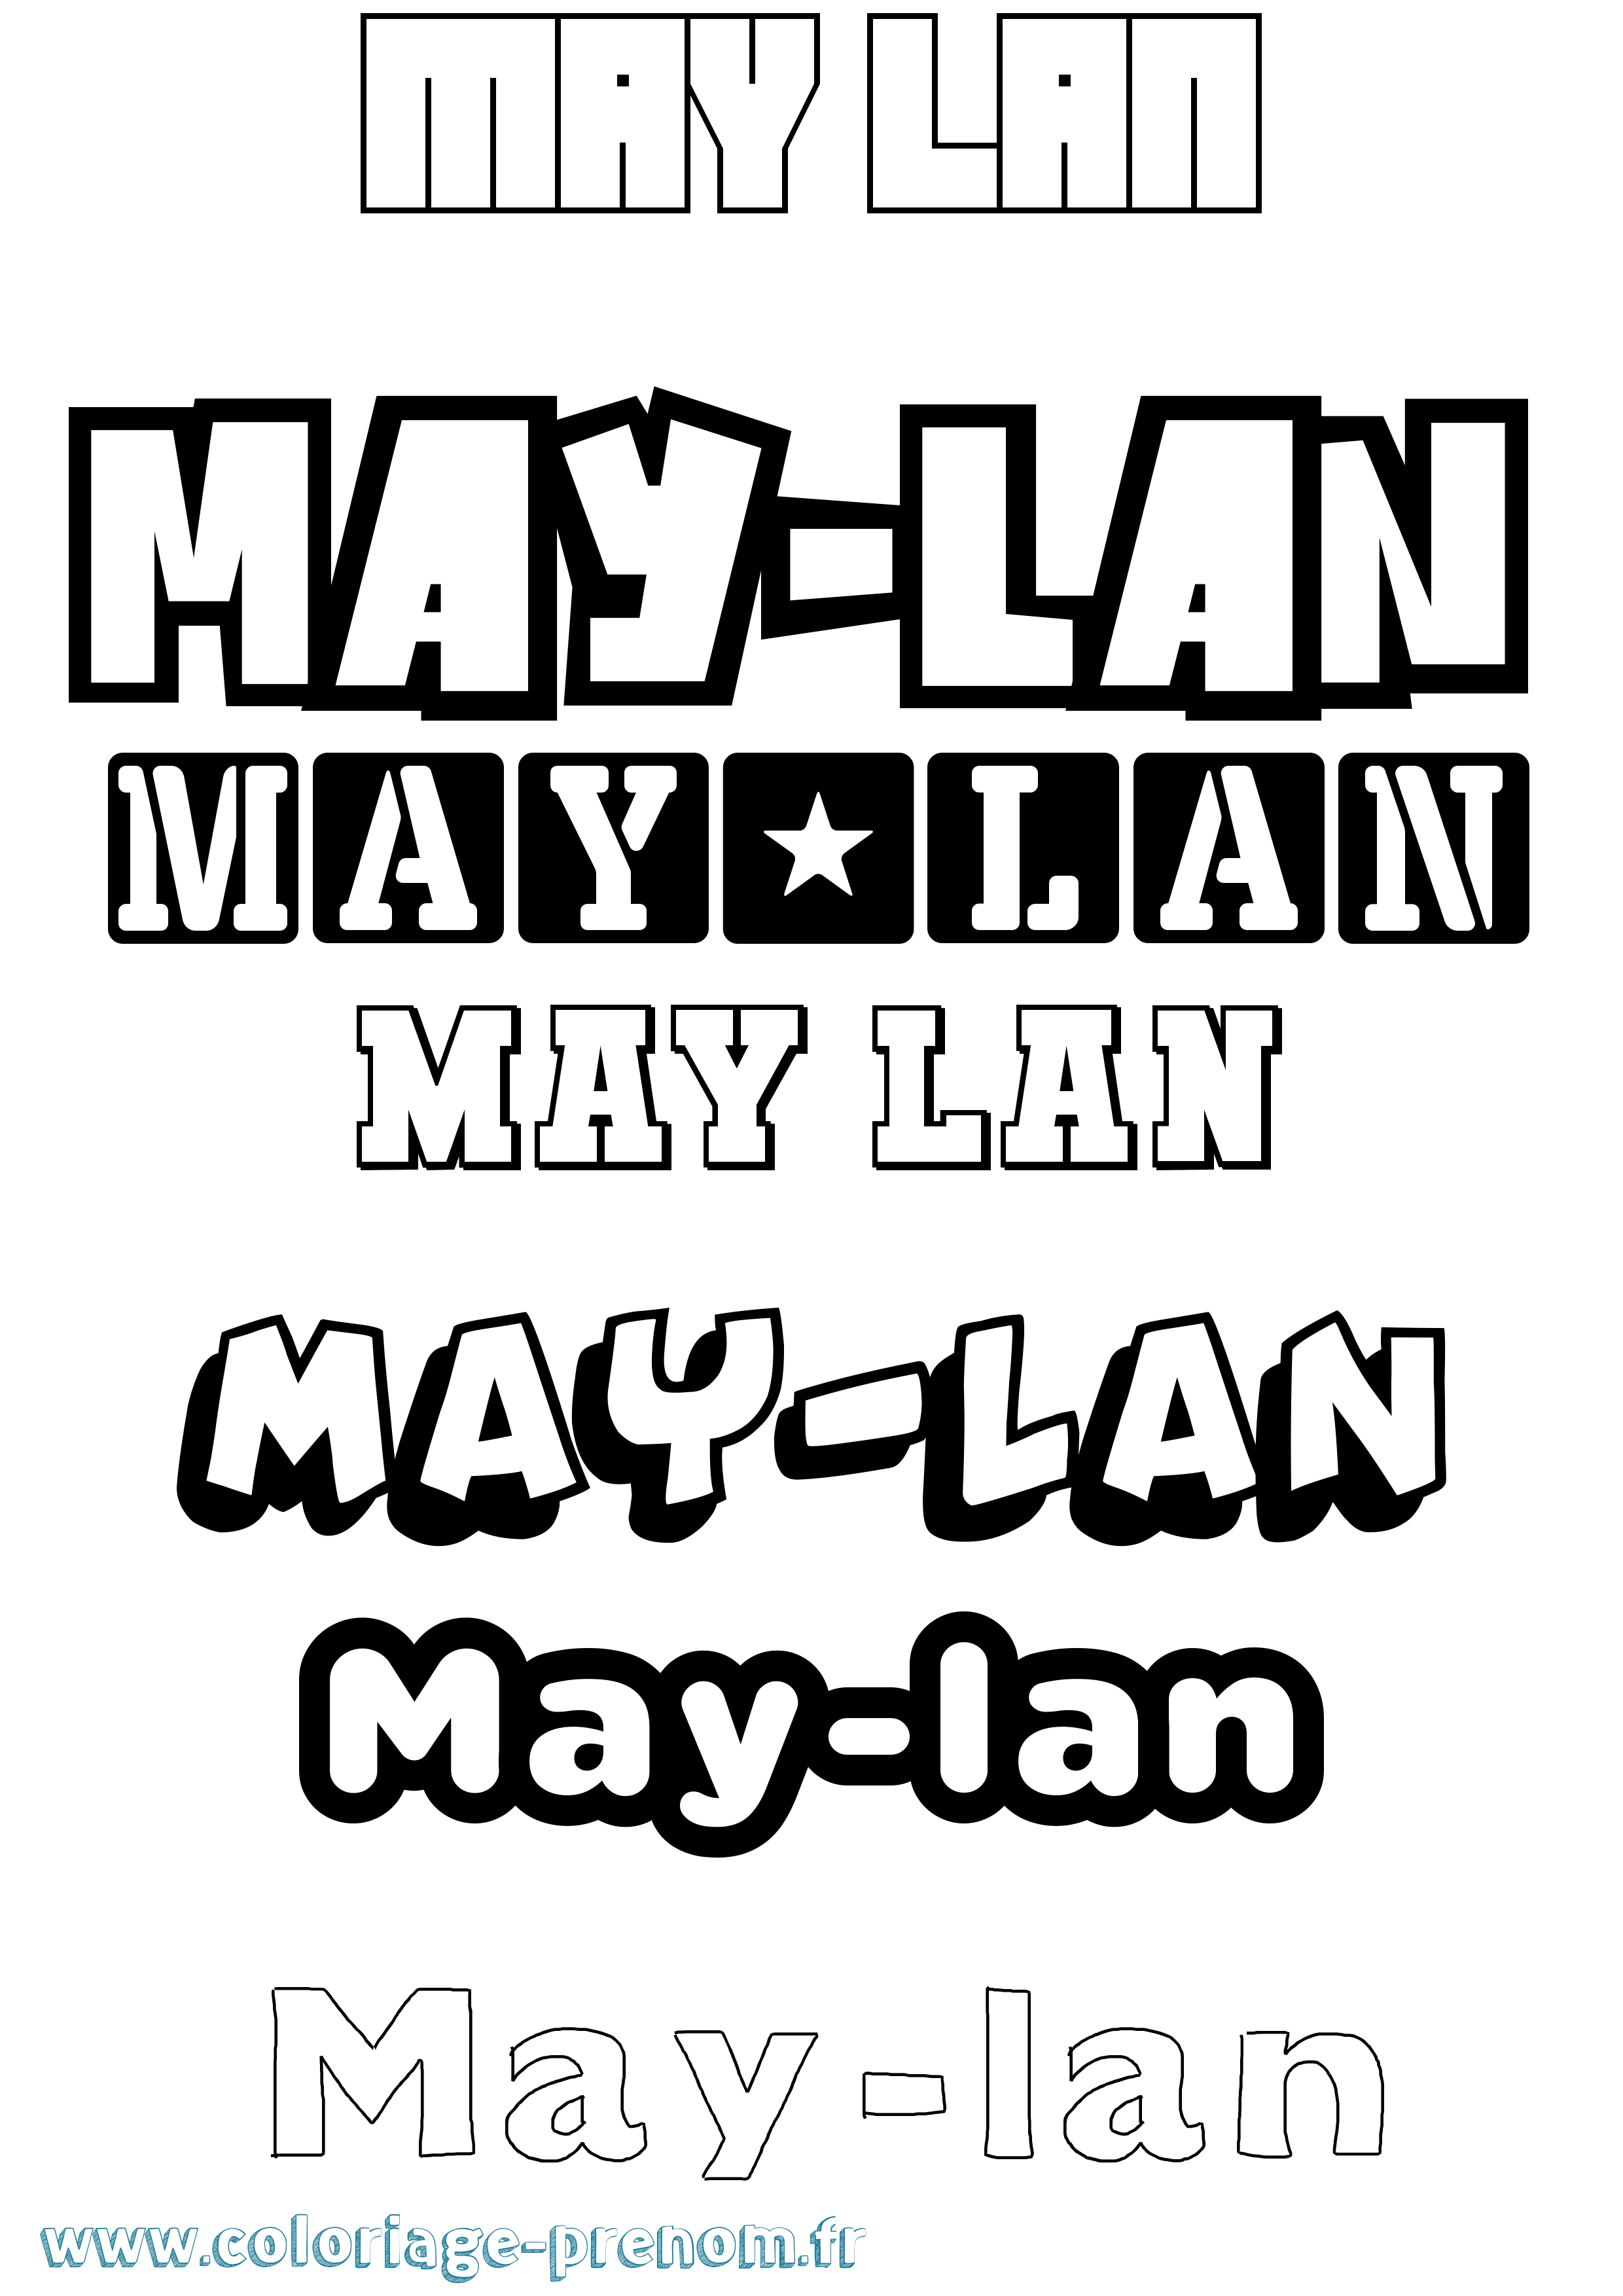 Coloriage prénom May-Lan Simple